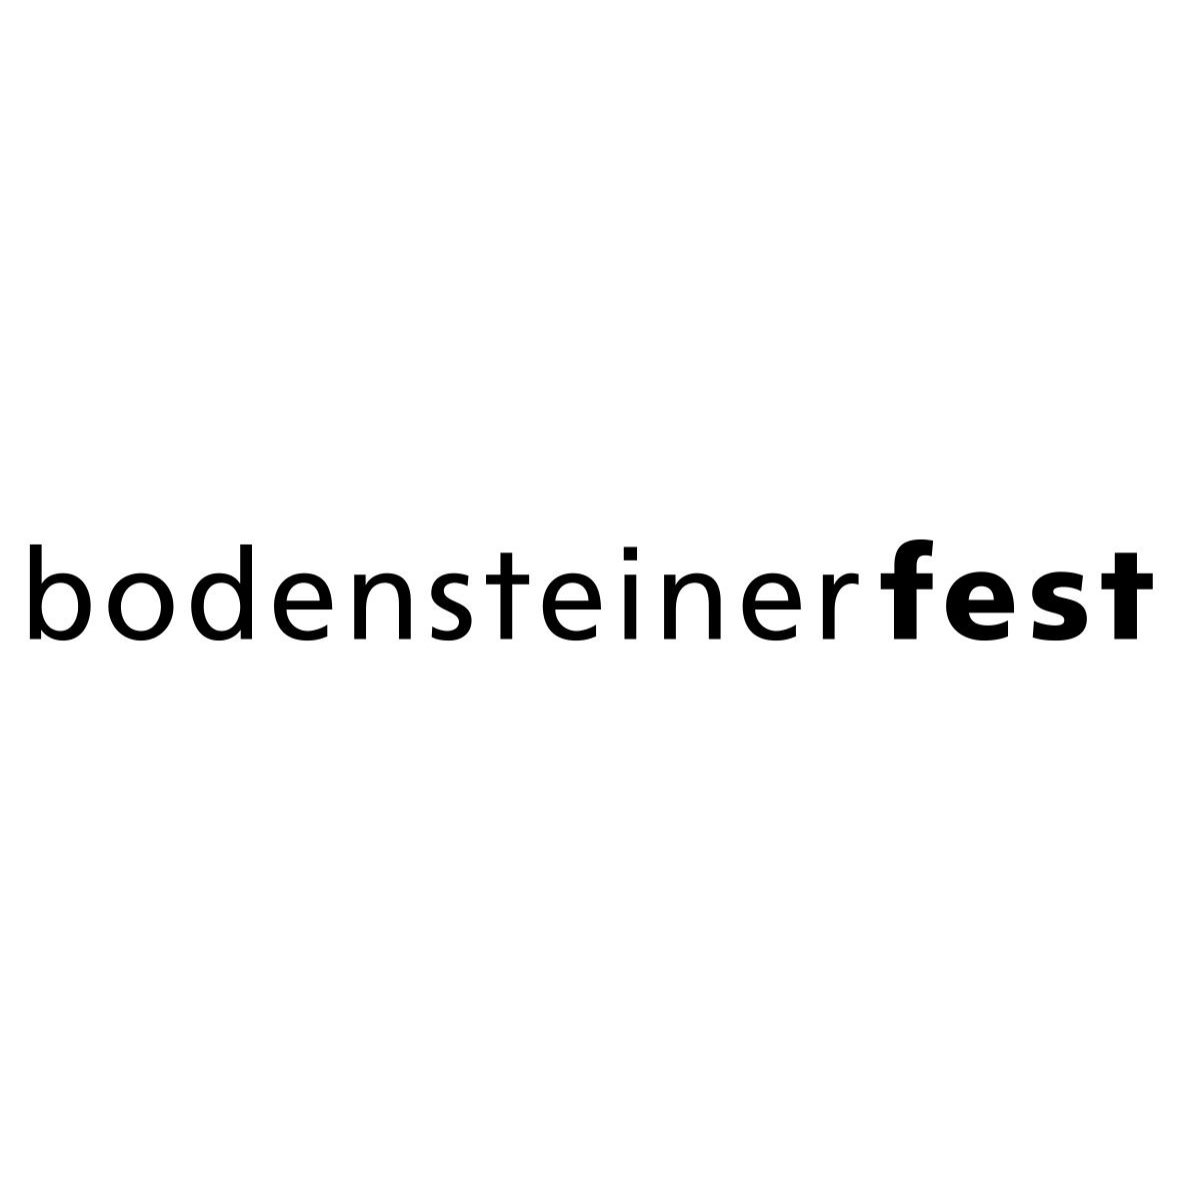 bodensteiner fest Architekten BDA Stadtplaner München Architekt in München - Logo